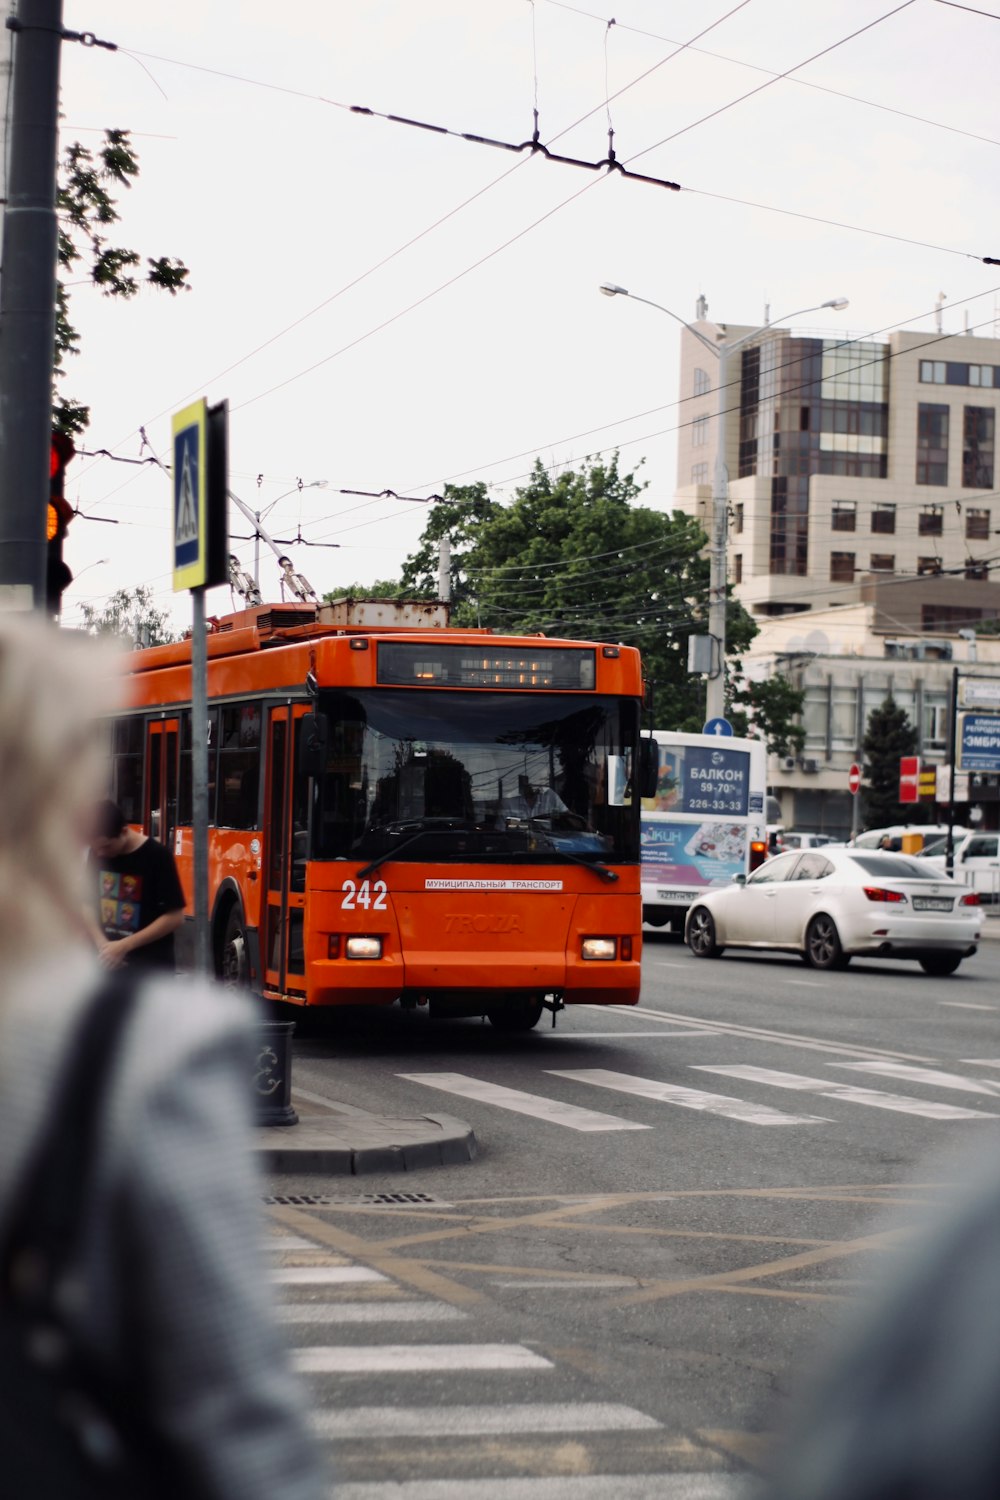 orange bus